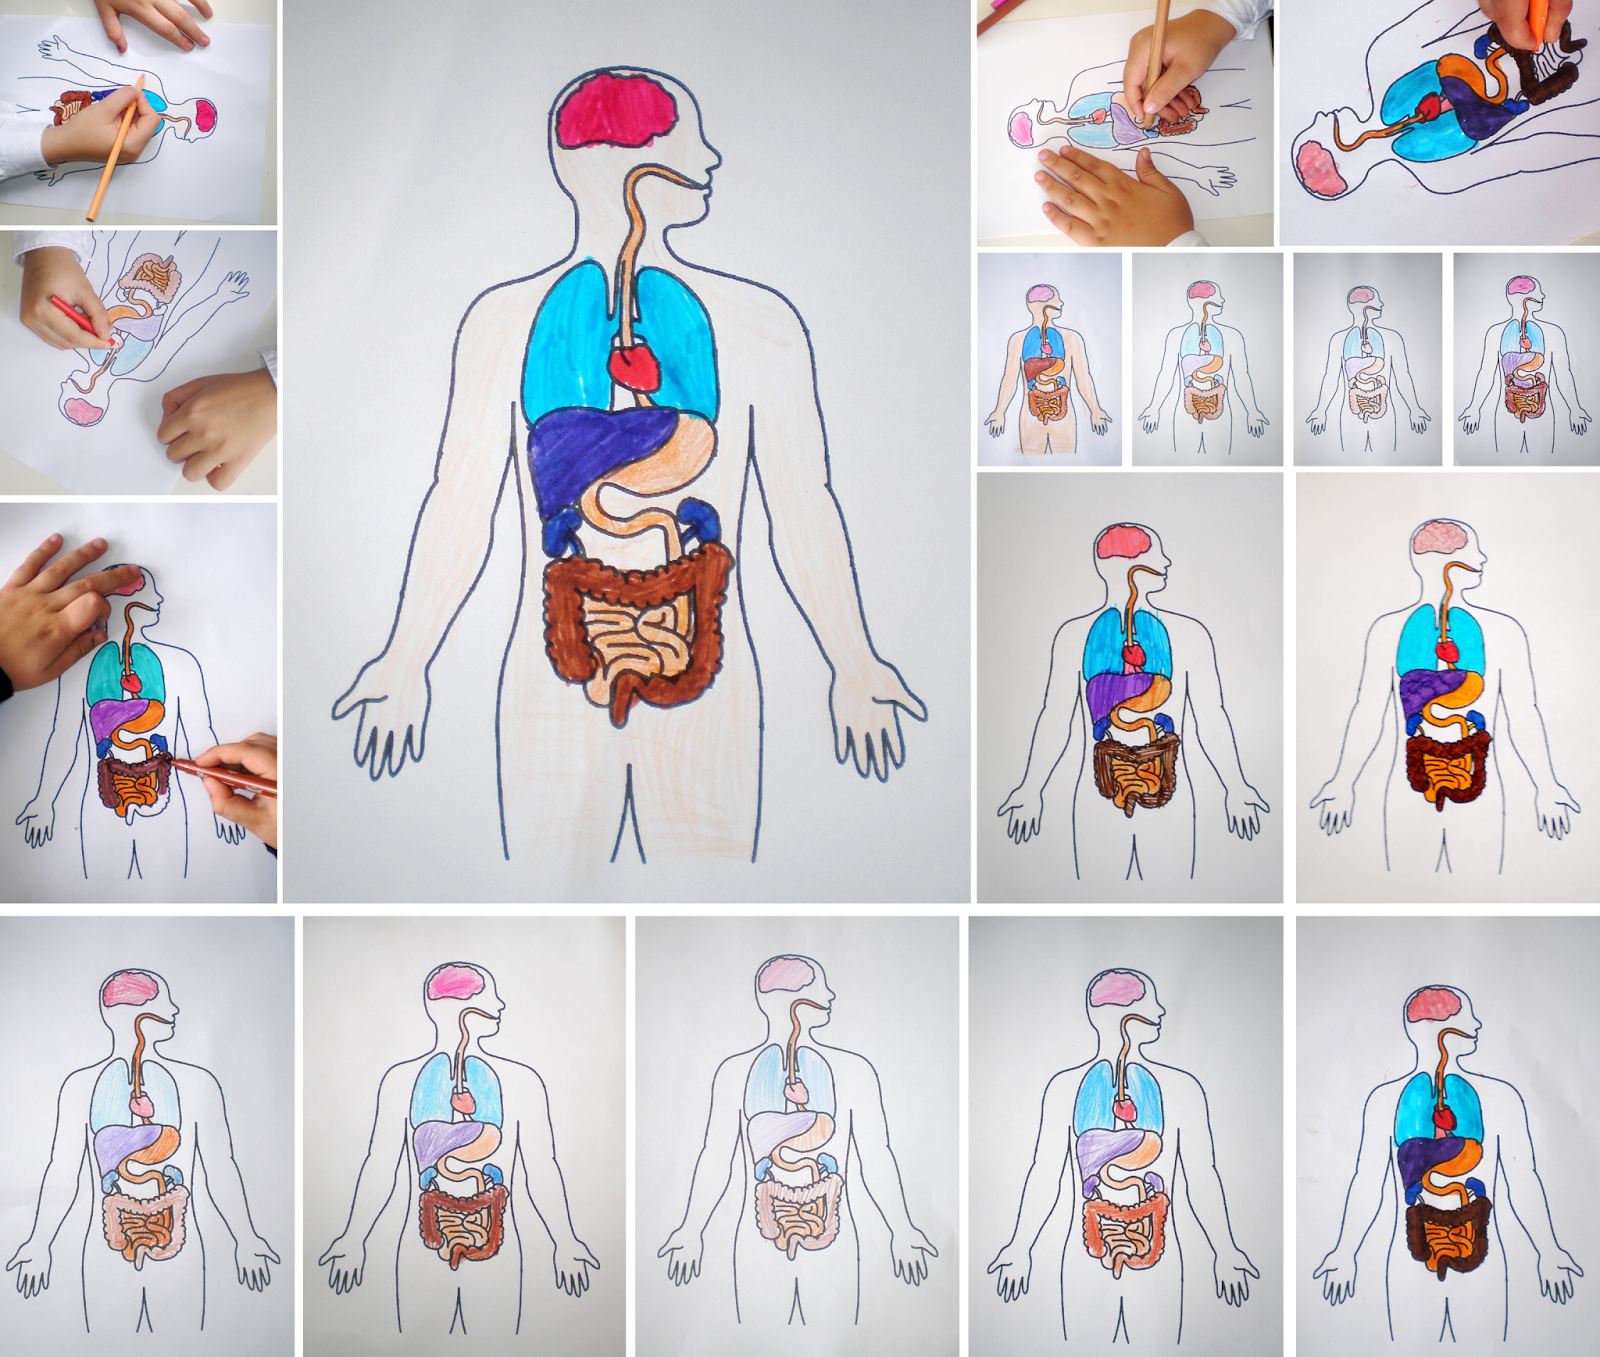 Organele din interiorul corpului uman